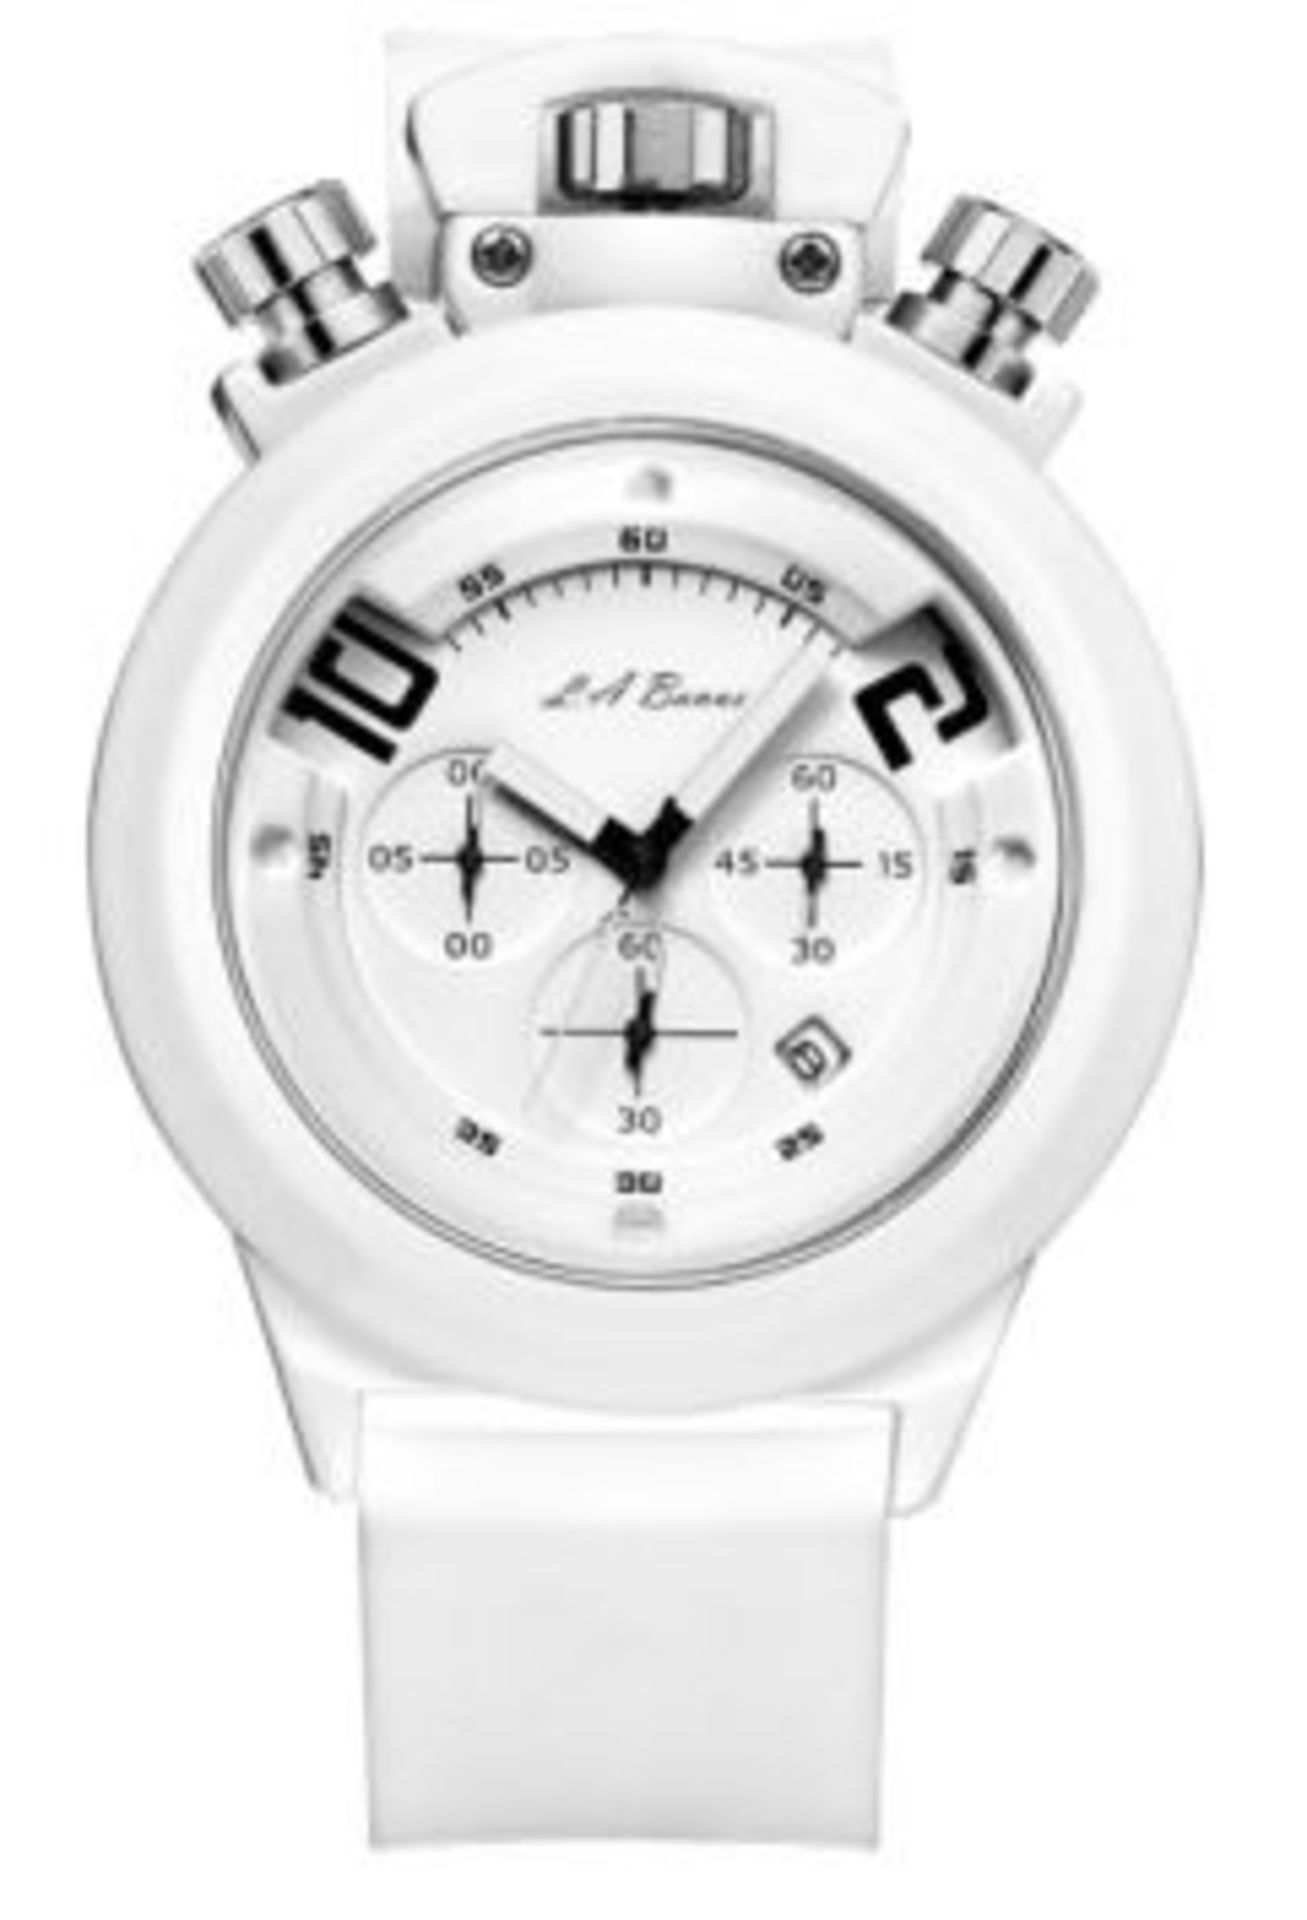 Men’s LA Banus chronograph Bull Crown sports watch, polar white dial, polar white rubber strap.